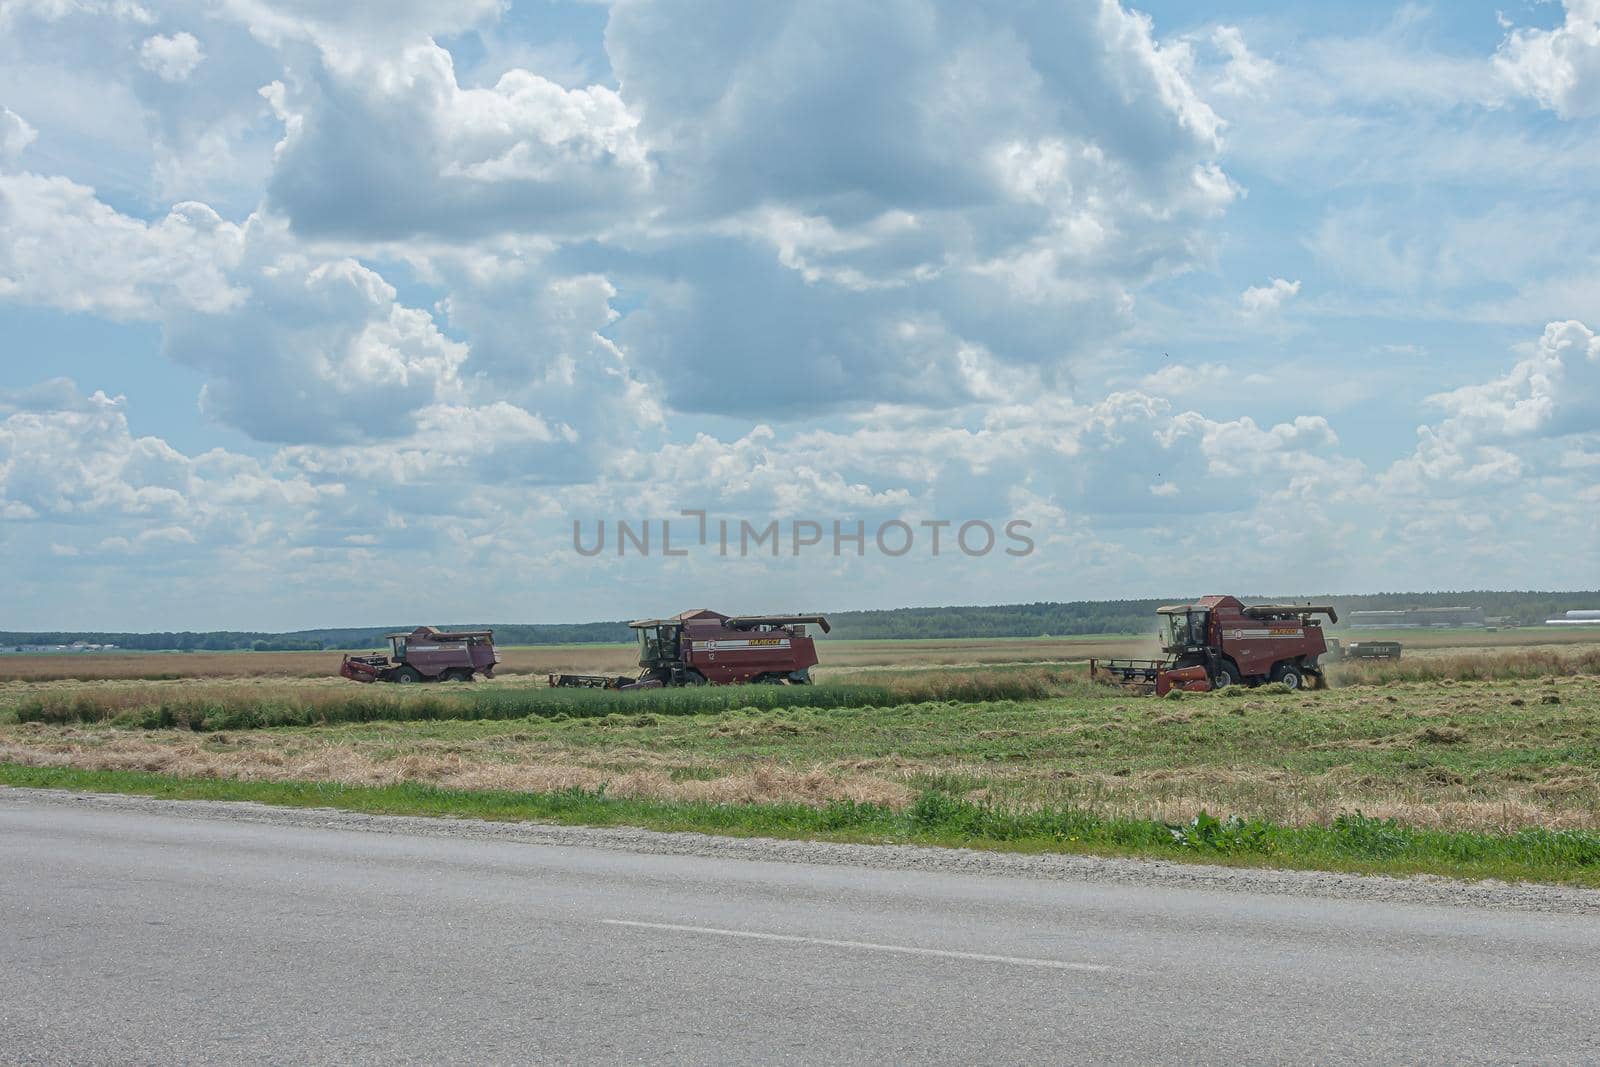 Gomel, Belarus - 07/12/2018: combine harvester in the field harvests grain. Stock photo.